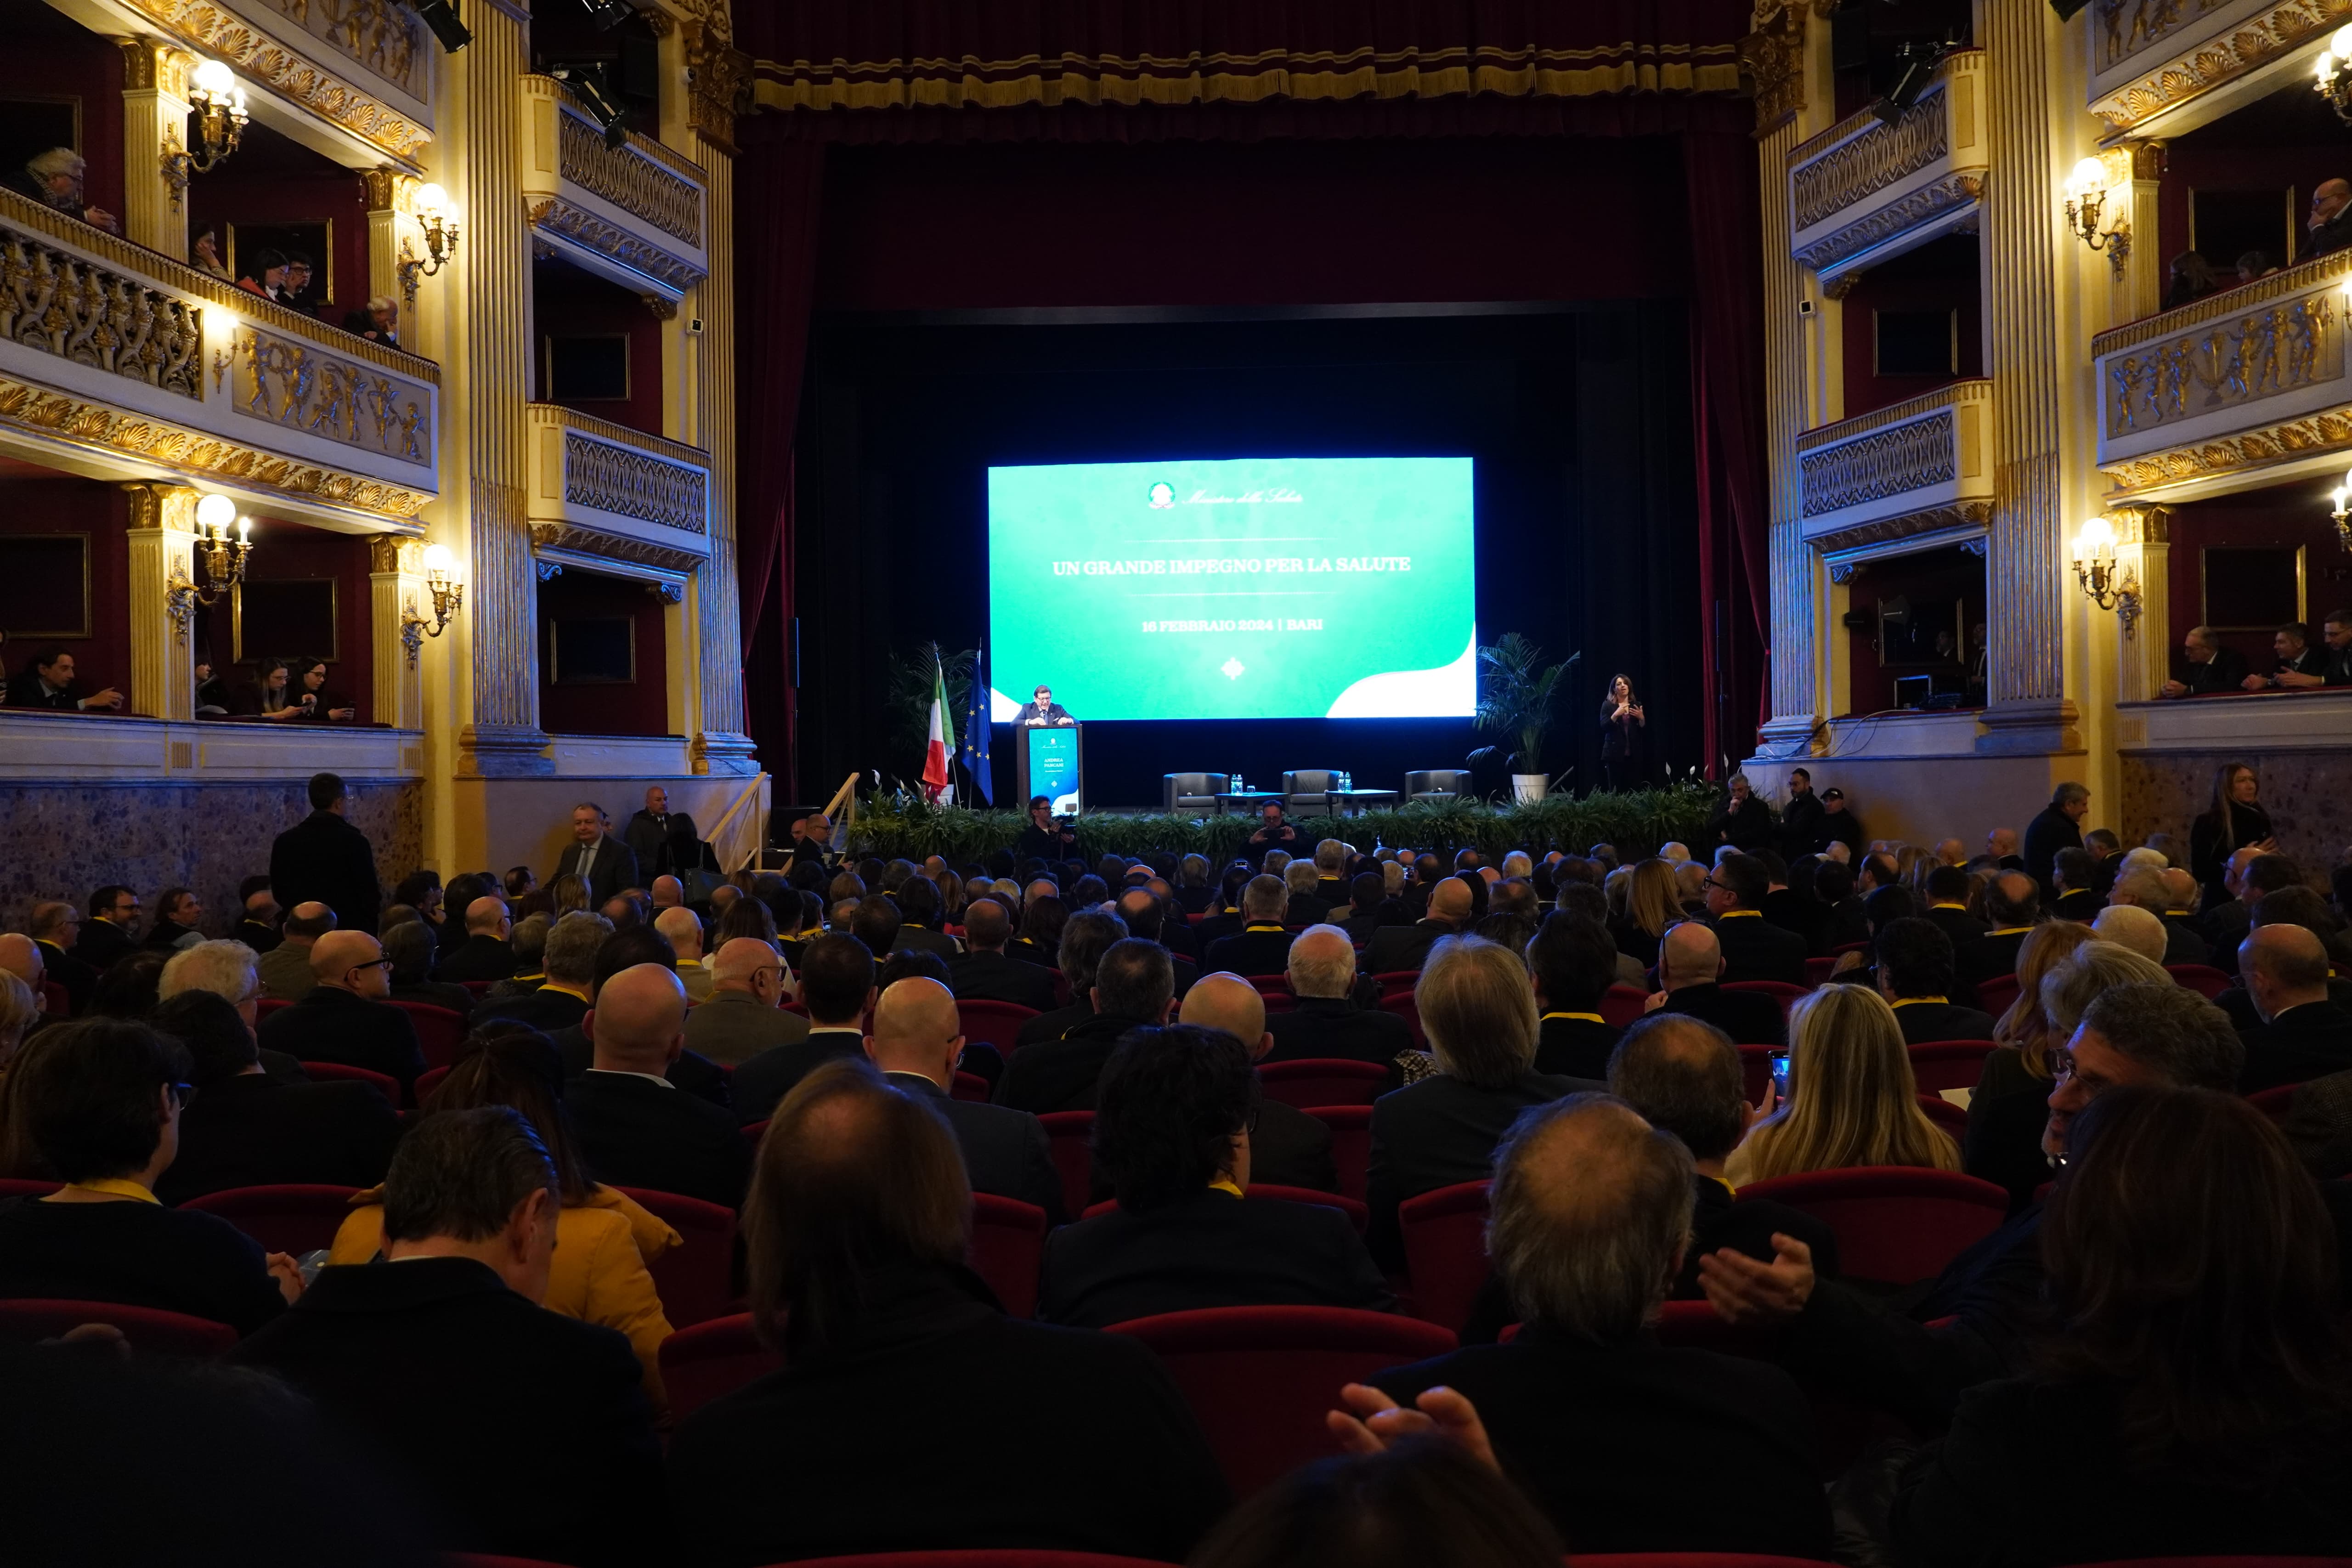 Galleria Il presidente Emiliano al convegno del Piccinni “Un grande impegno per la salute” alla presenza del ministro Schillaci - Diapositiva 3 di 4